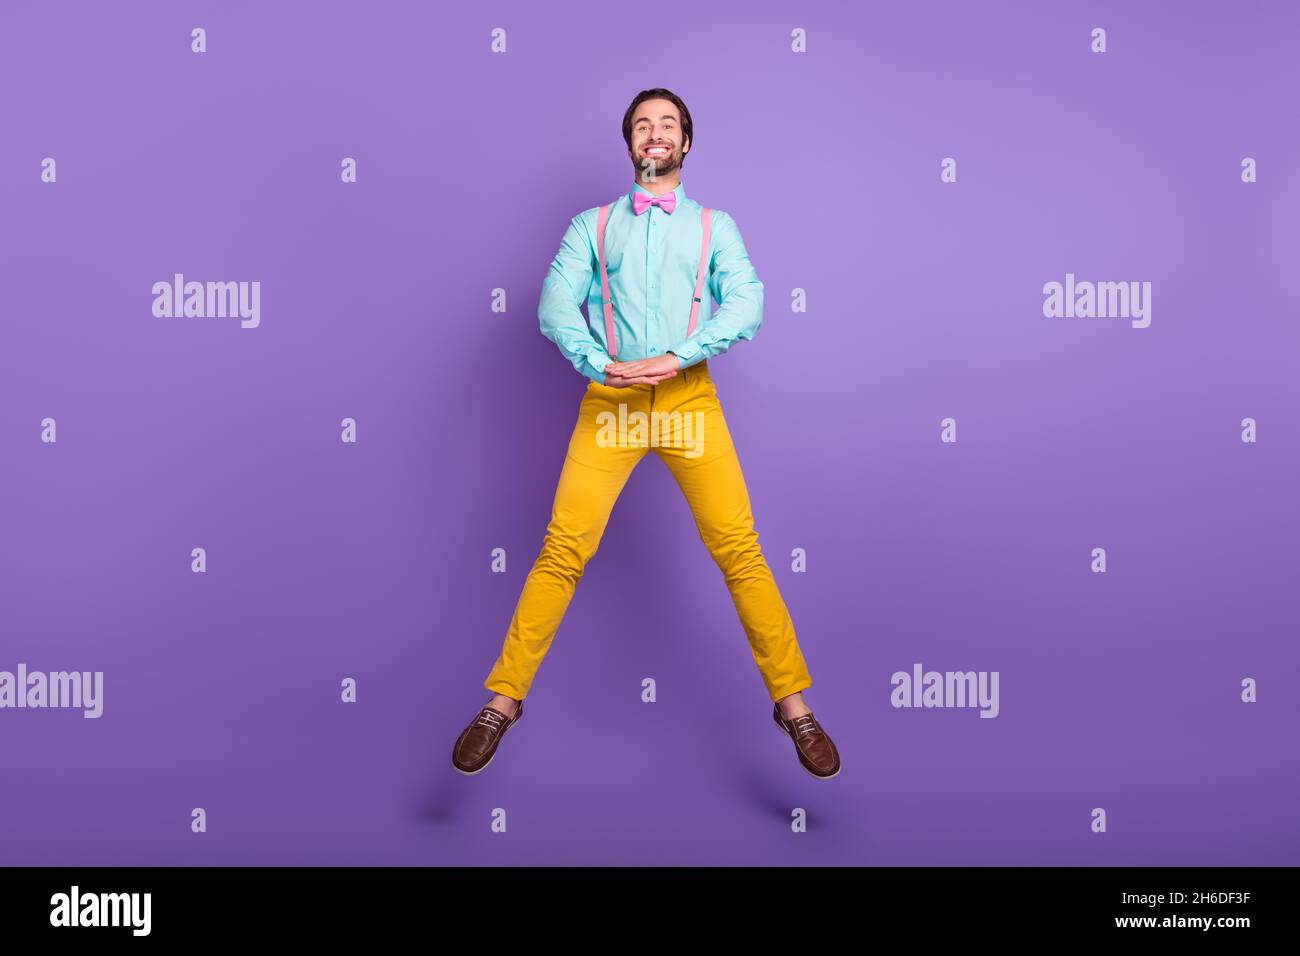 Photo pleine longueur de Nice millenny Guy jump port cravate bretelles chemise pantalon chaussures isolées sur fond violet Banque D'Images